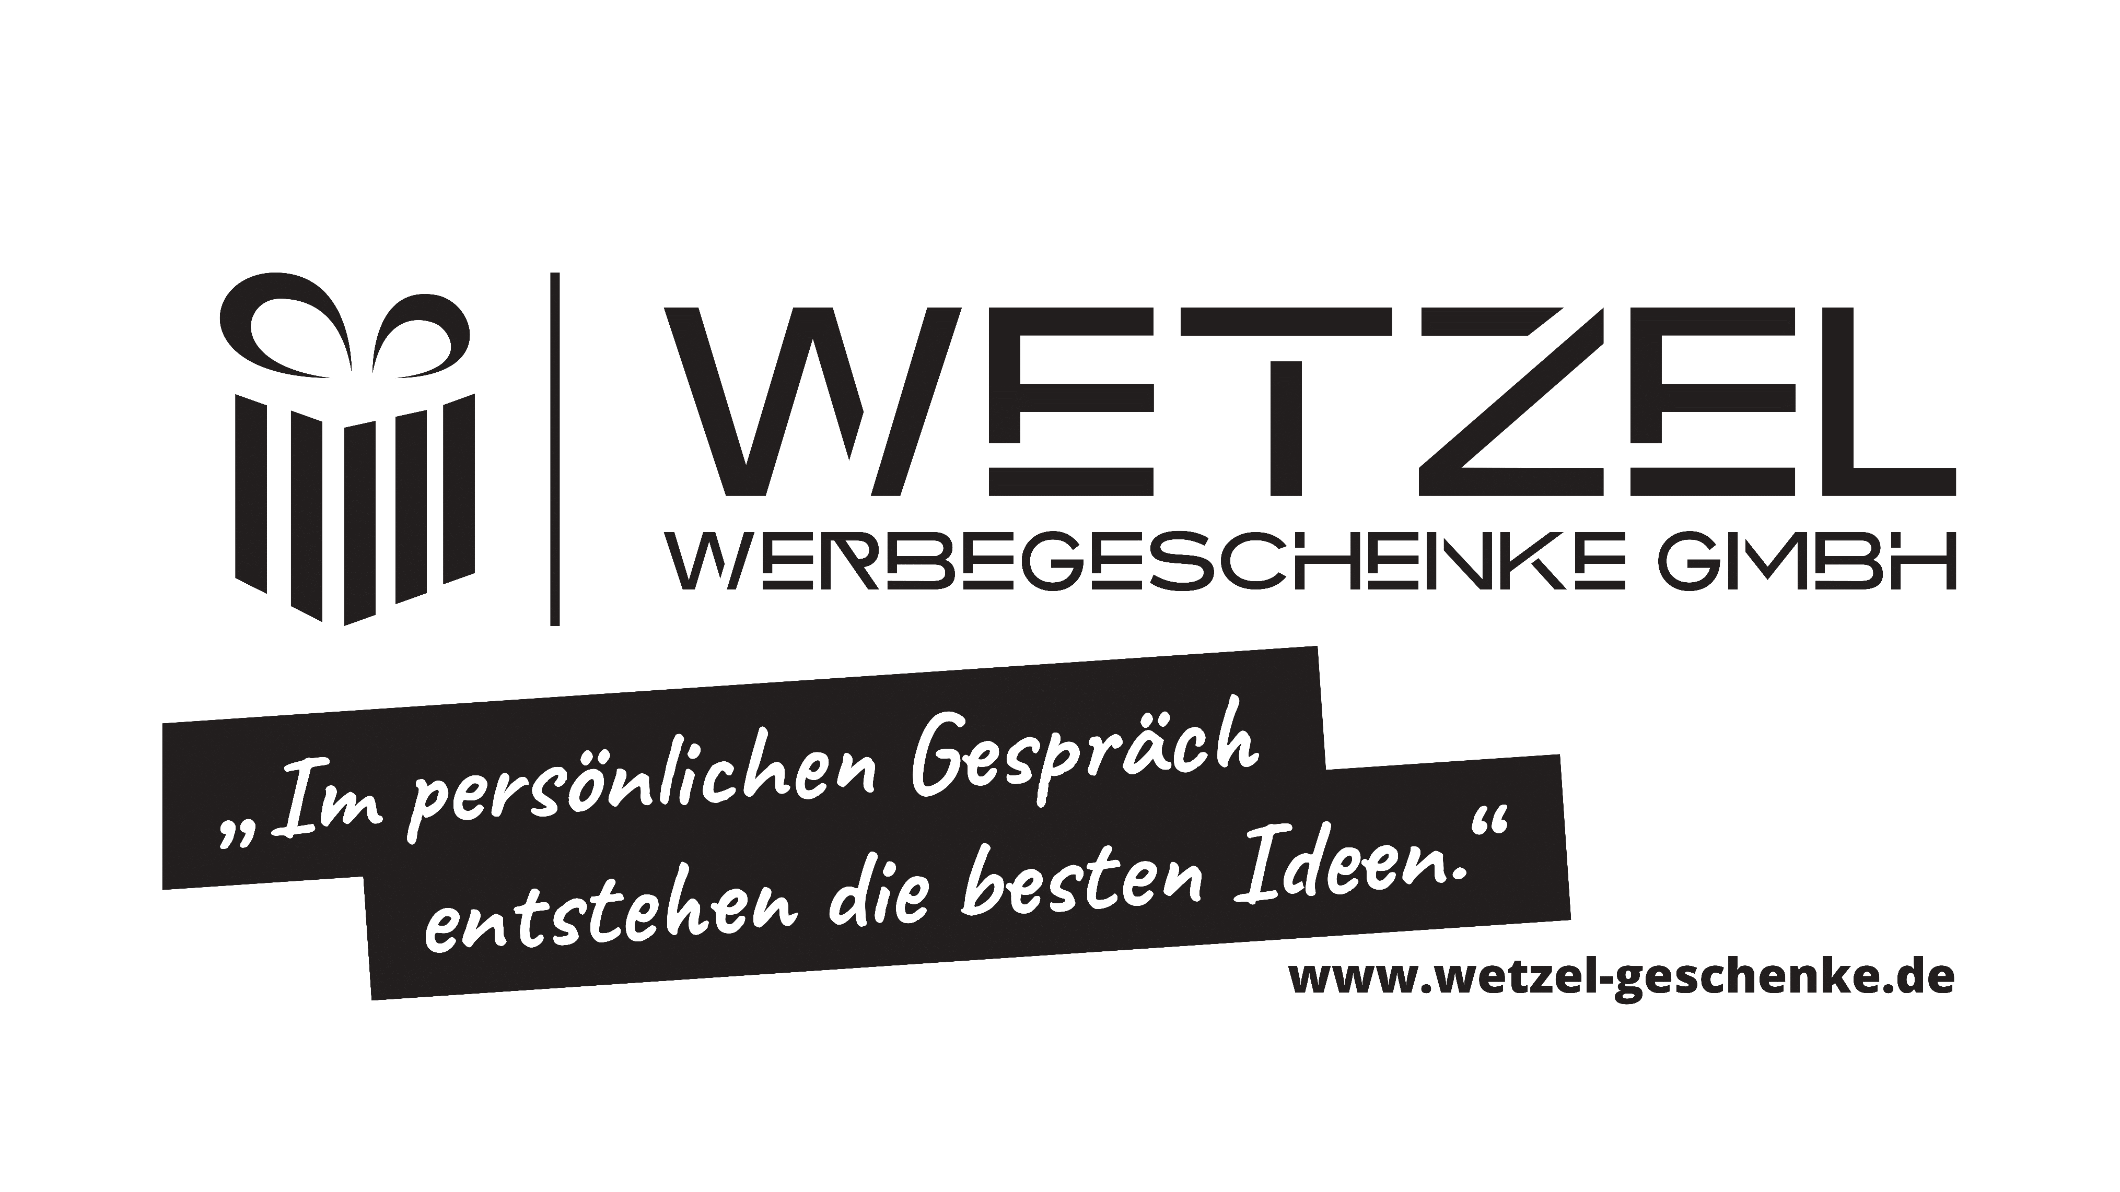 Bild 1 Wetzel Werbegeschenke GmbH in Mutterstadt